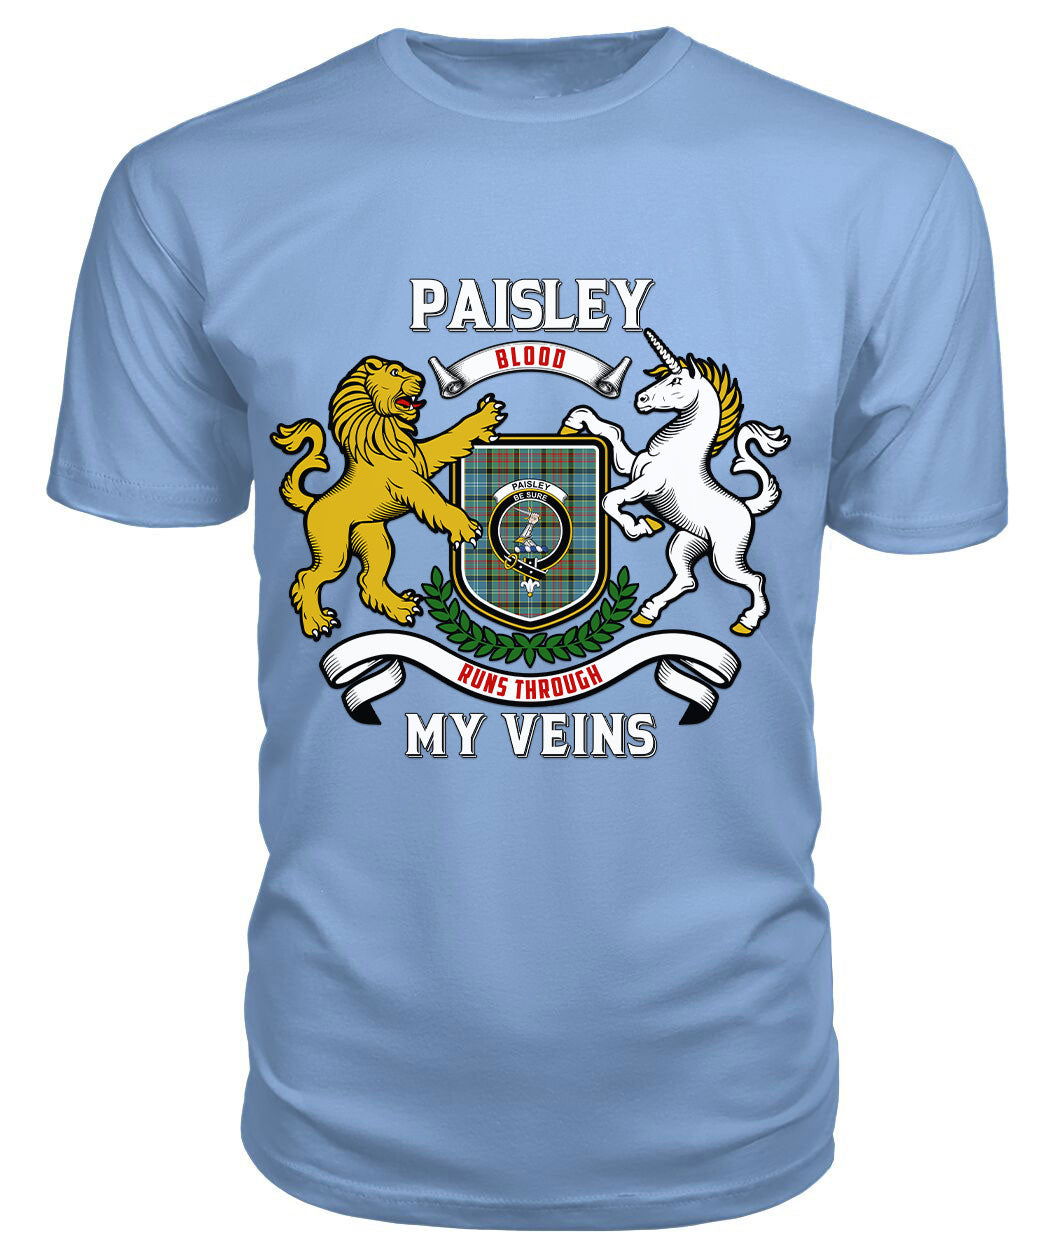 Paisley District Tartan Crest 2D T-shirt - Blood Runs Through My Veins Style